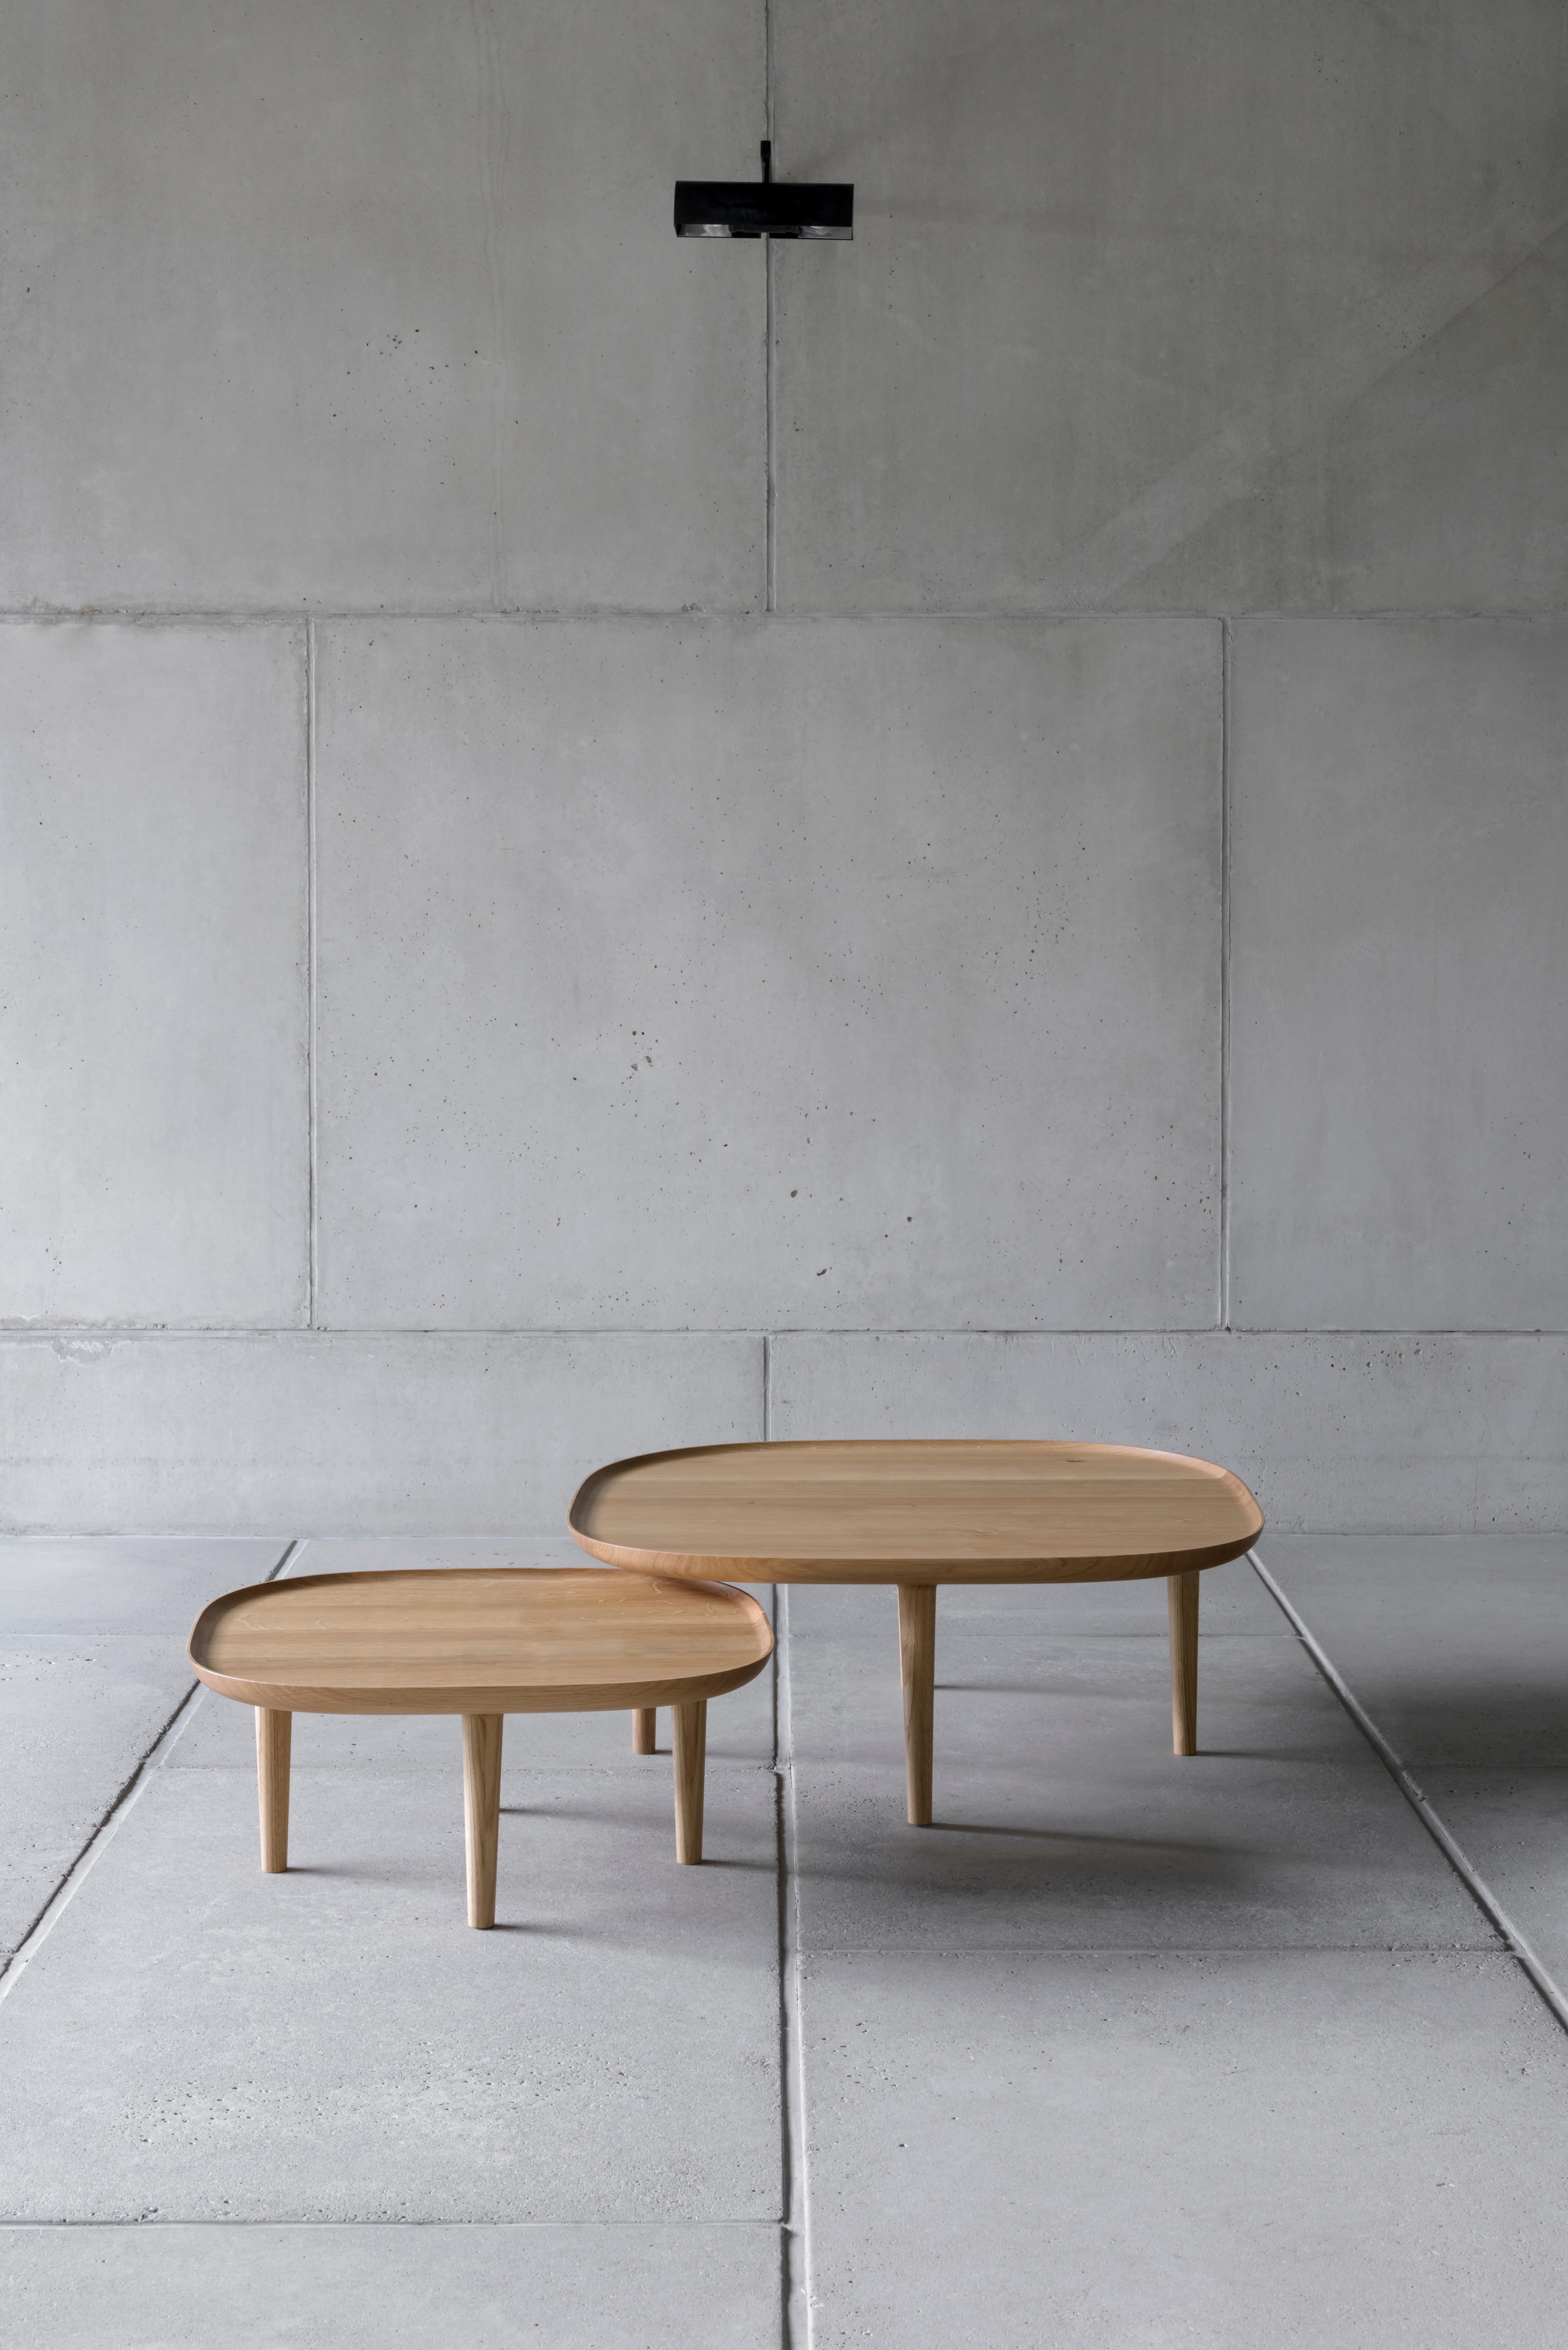 Fiori Table 65 designed by Antrei Hartikainen x Poiat
Fiori Collection 2017

Available finishes: 
- Oak
- Dark oak 
- Black oak

Model shown in picture : 
- H. 30 x 65 x 65 cm
- Oak

Designed by Poiat Studio in collaboration with the